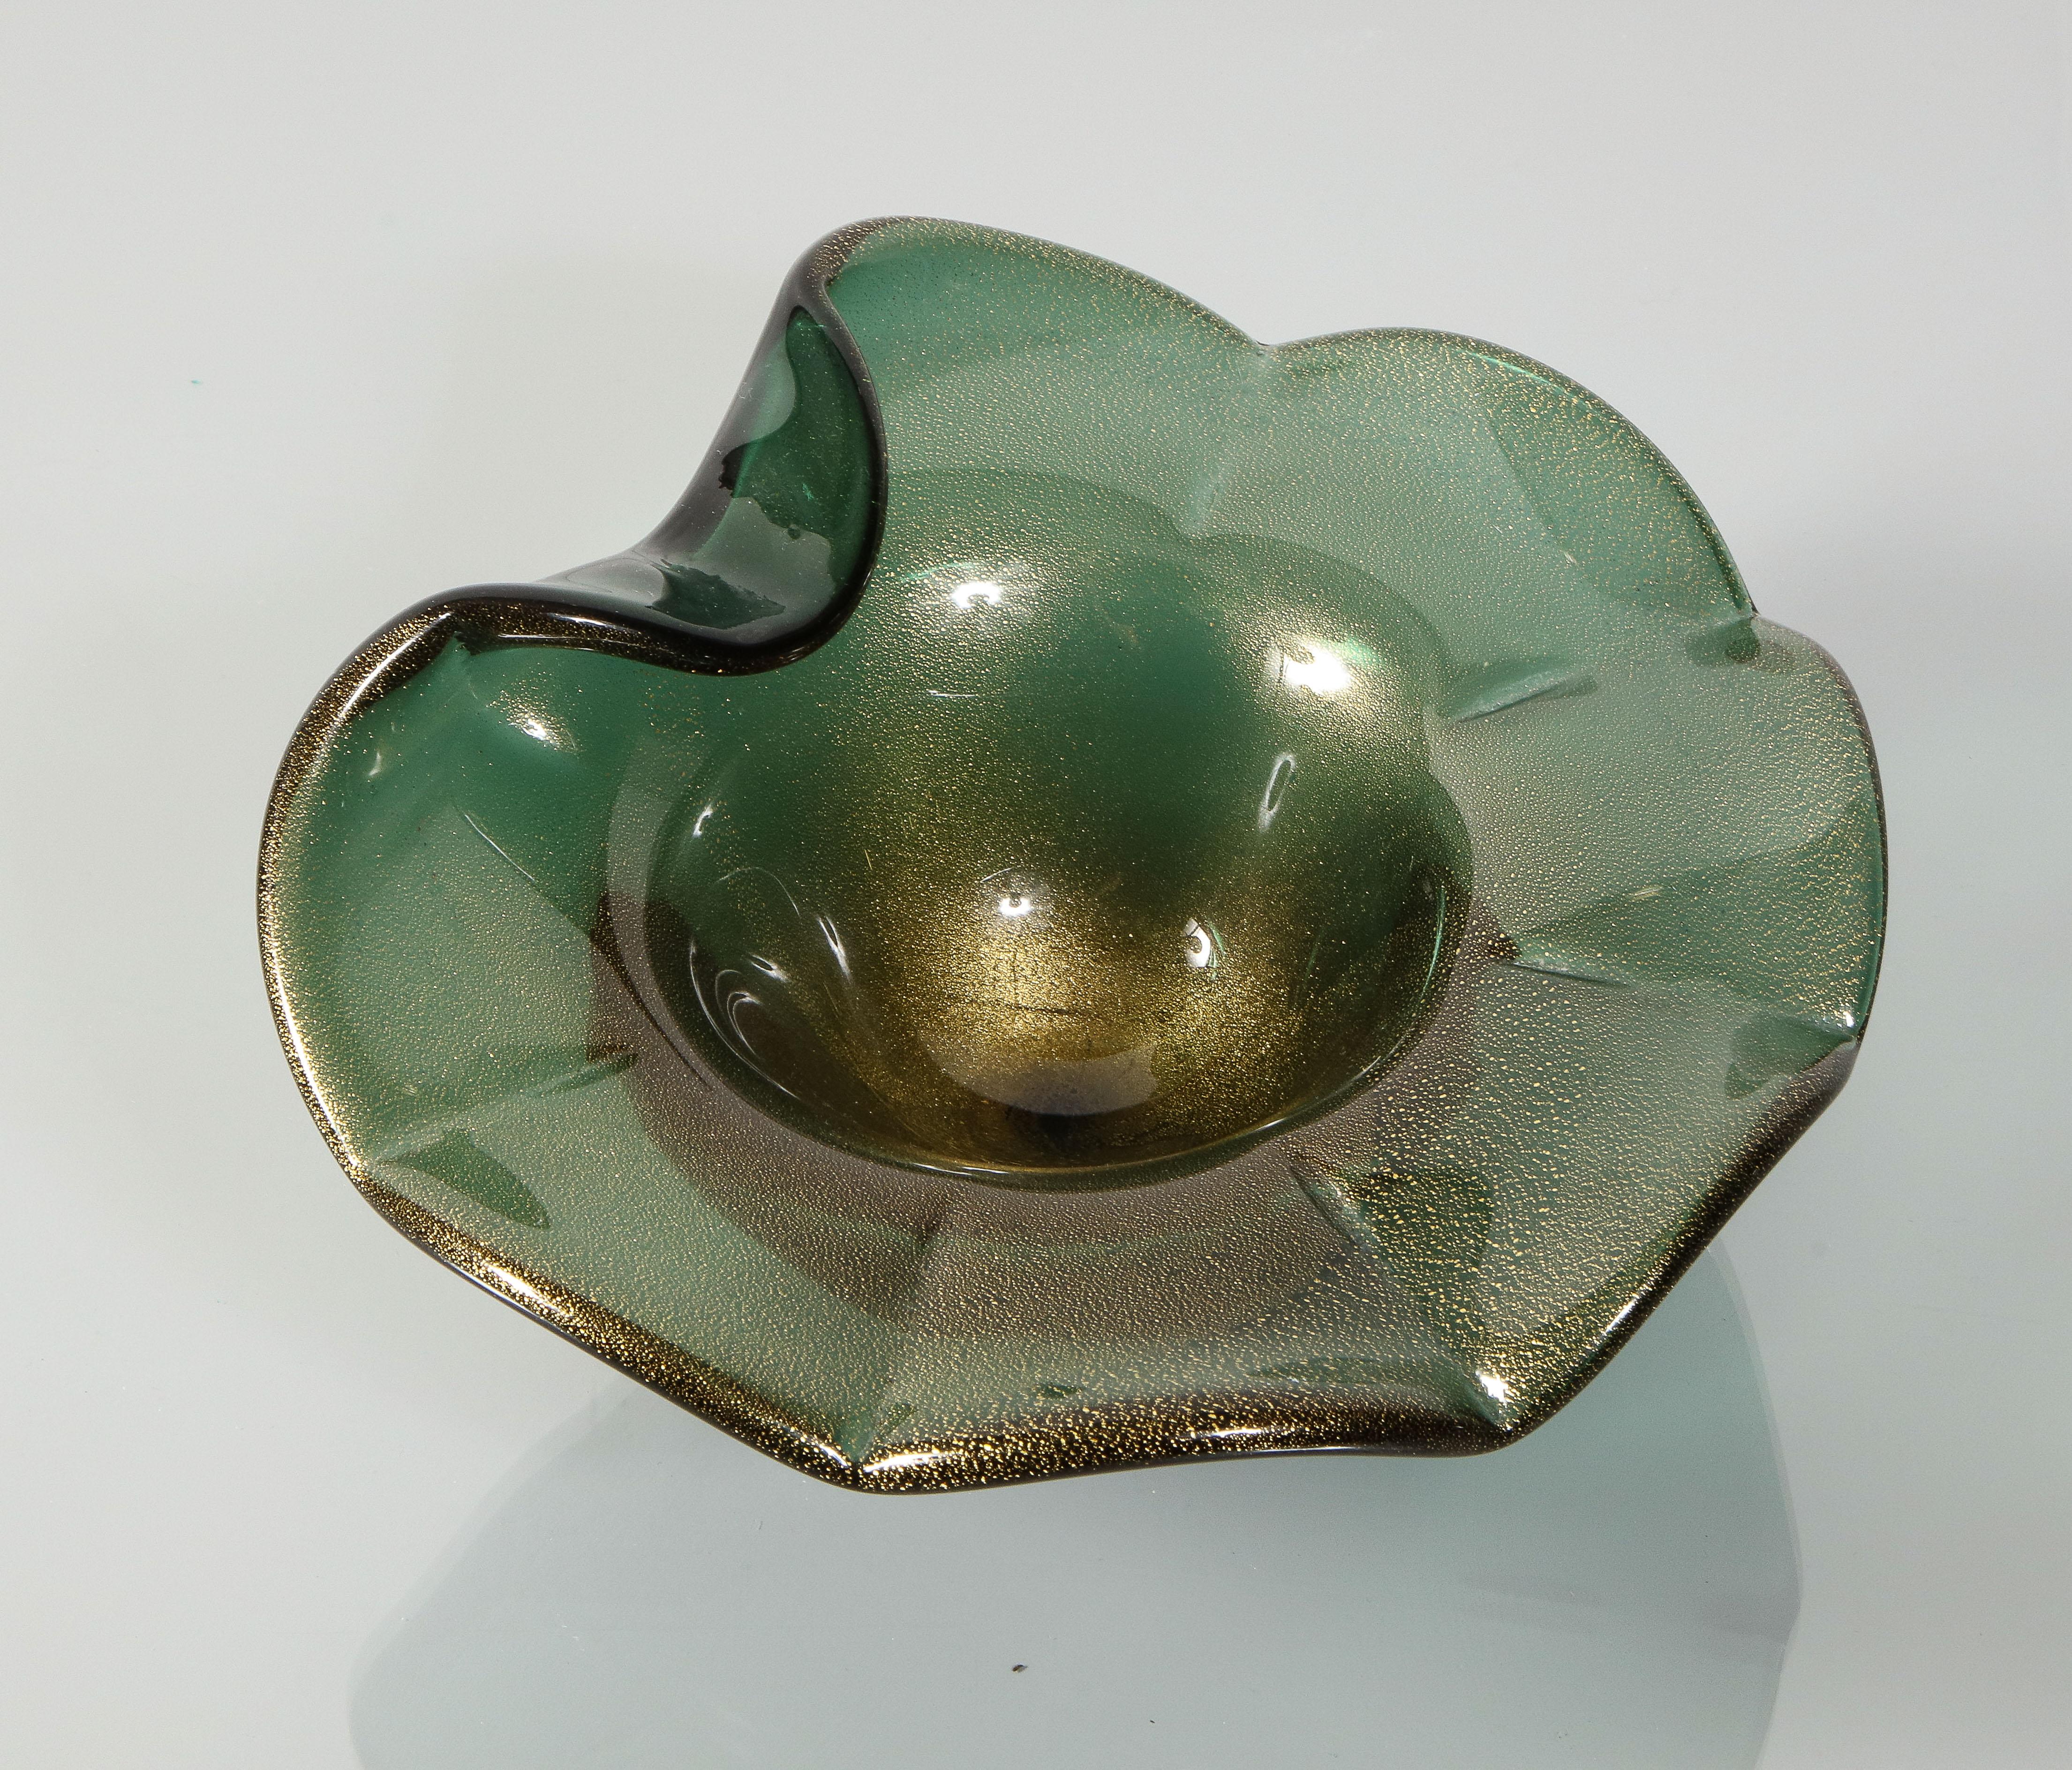 Alberto Donà Murano Green Bullicante and Aventurina Glass Dish 1970's #1 1